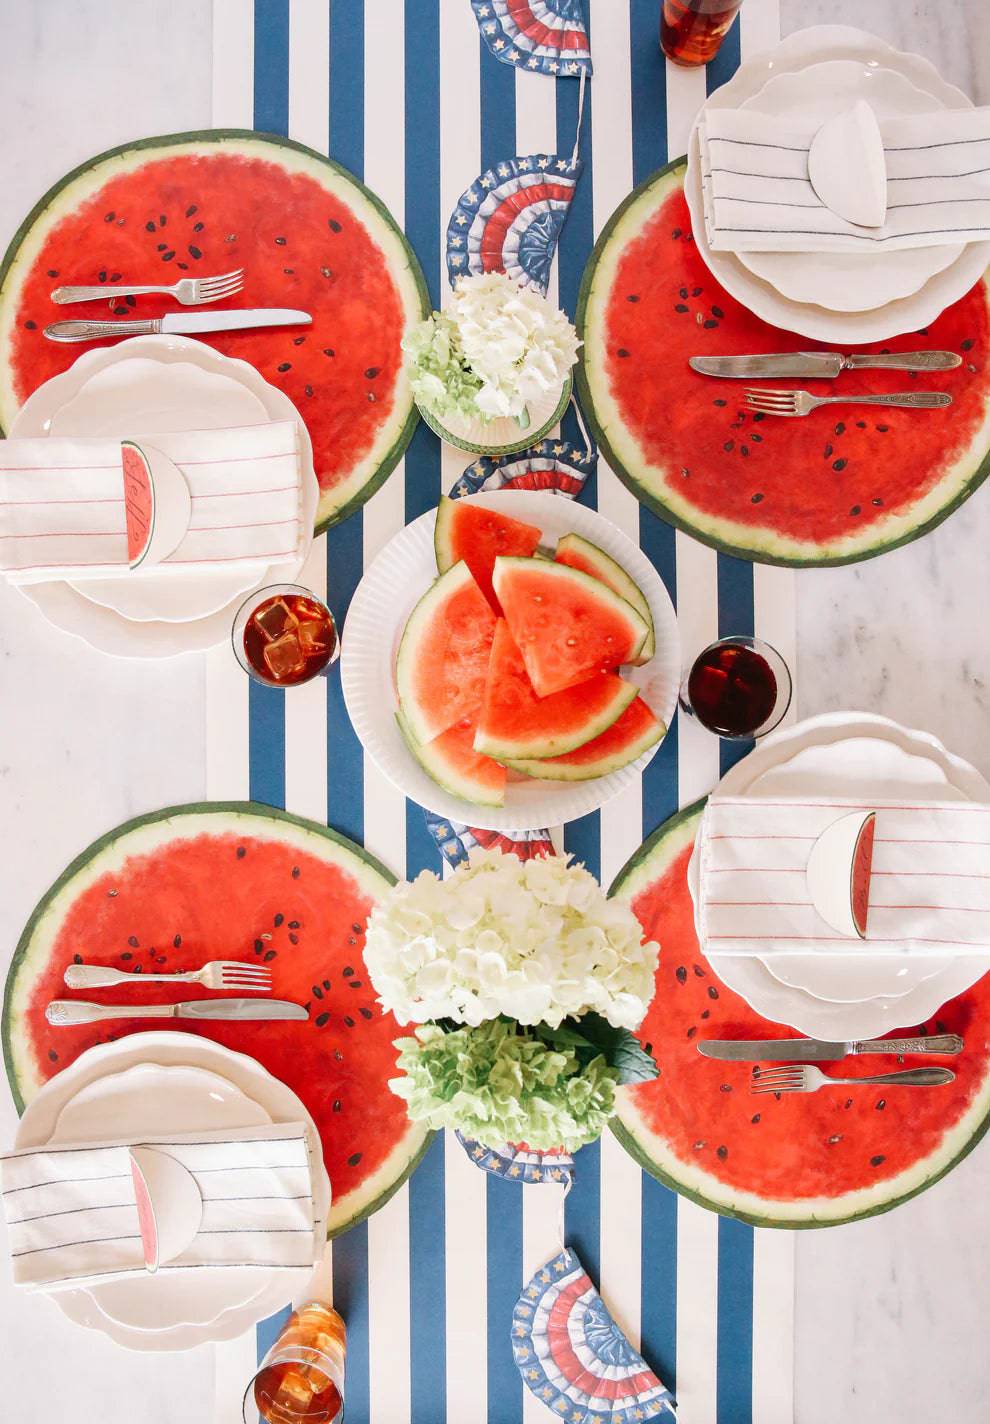 Hester & Cook - Die-Cut Watermelon Placemat - Findlay Rowe Designs